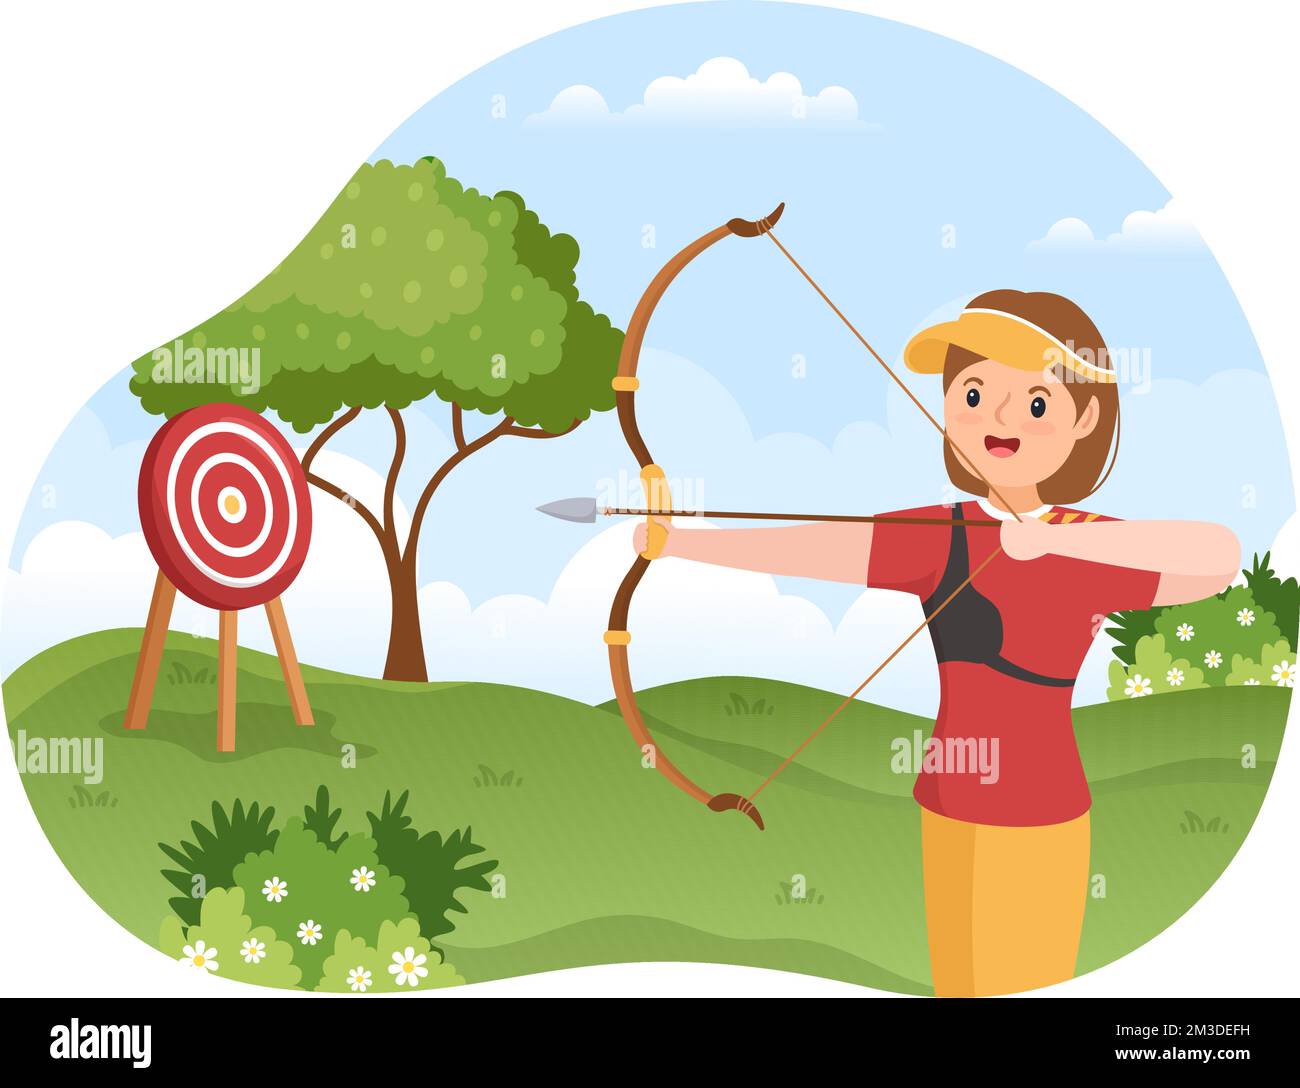 Sport de tir à l'arc avec un arc et une flèche pointant vers Target pour une activité de loisir en plein air sur un dessin animé à la main Illustration de Vecteur